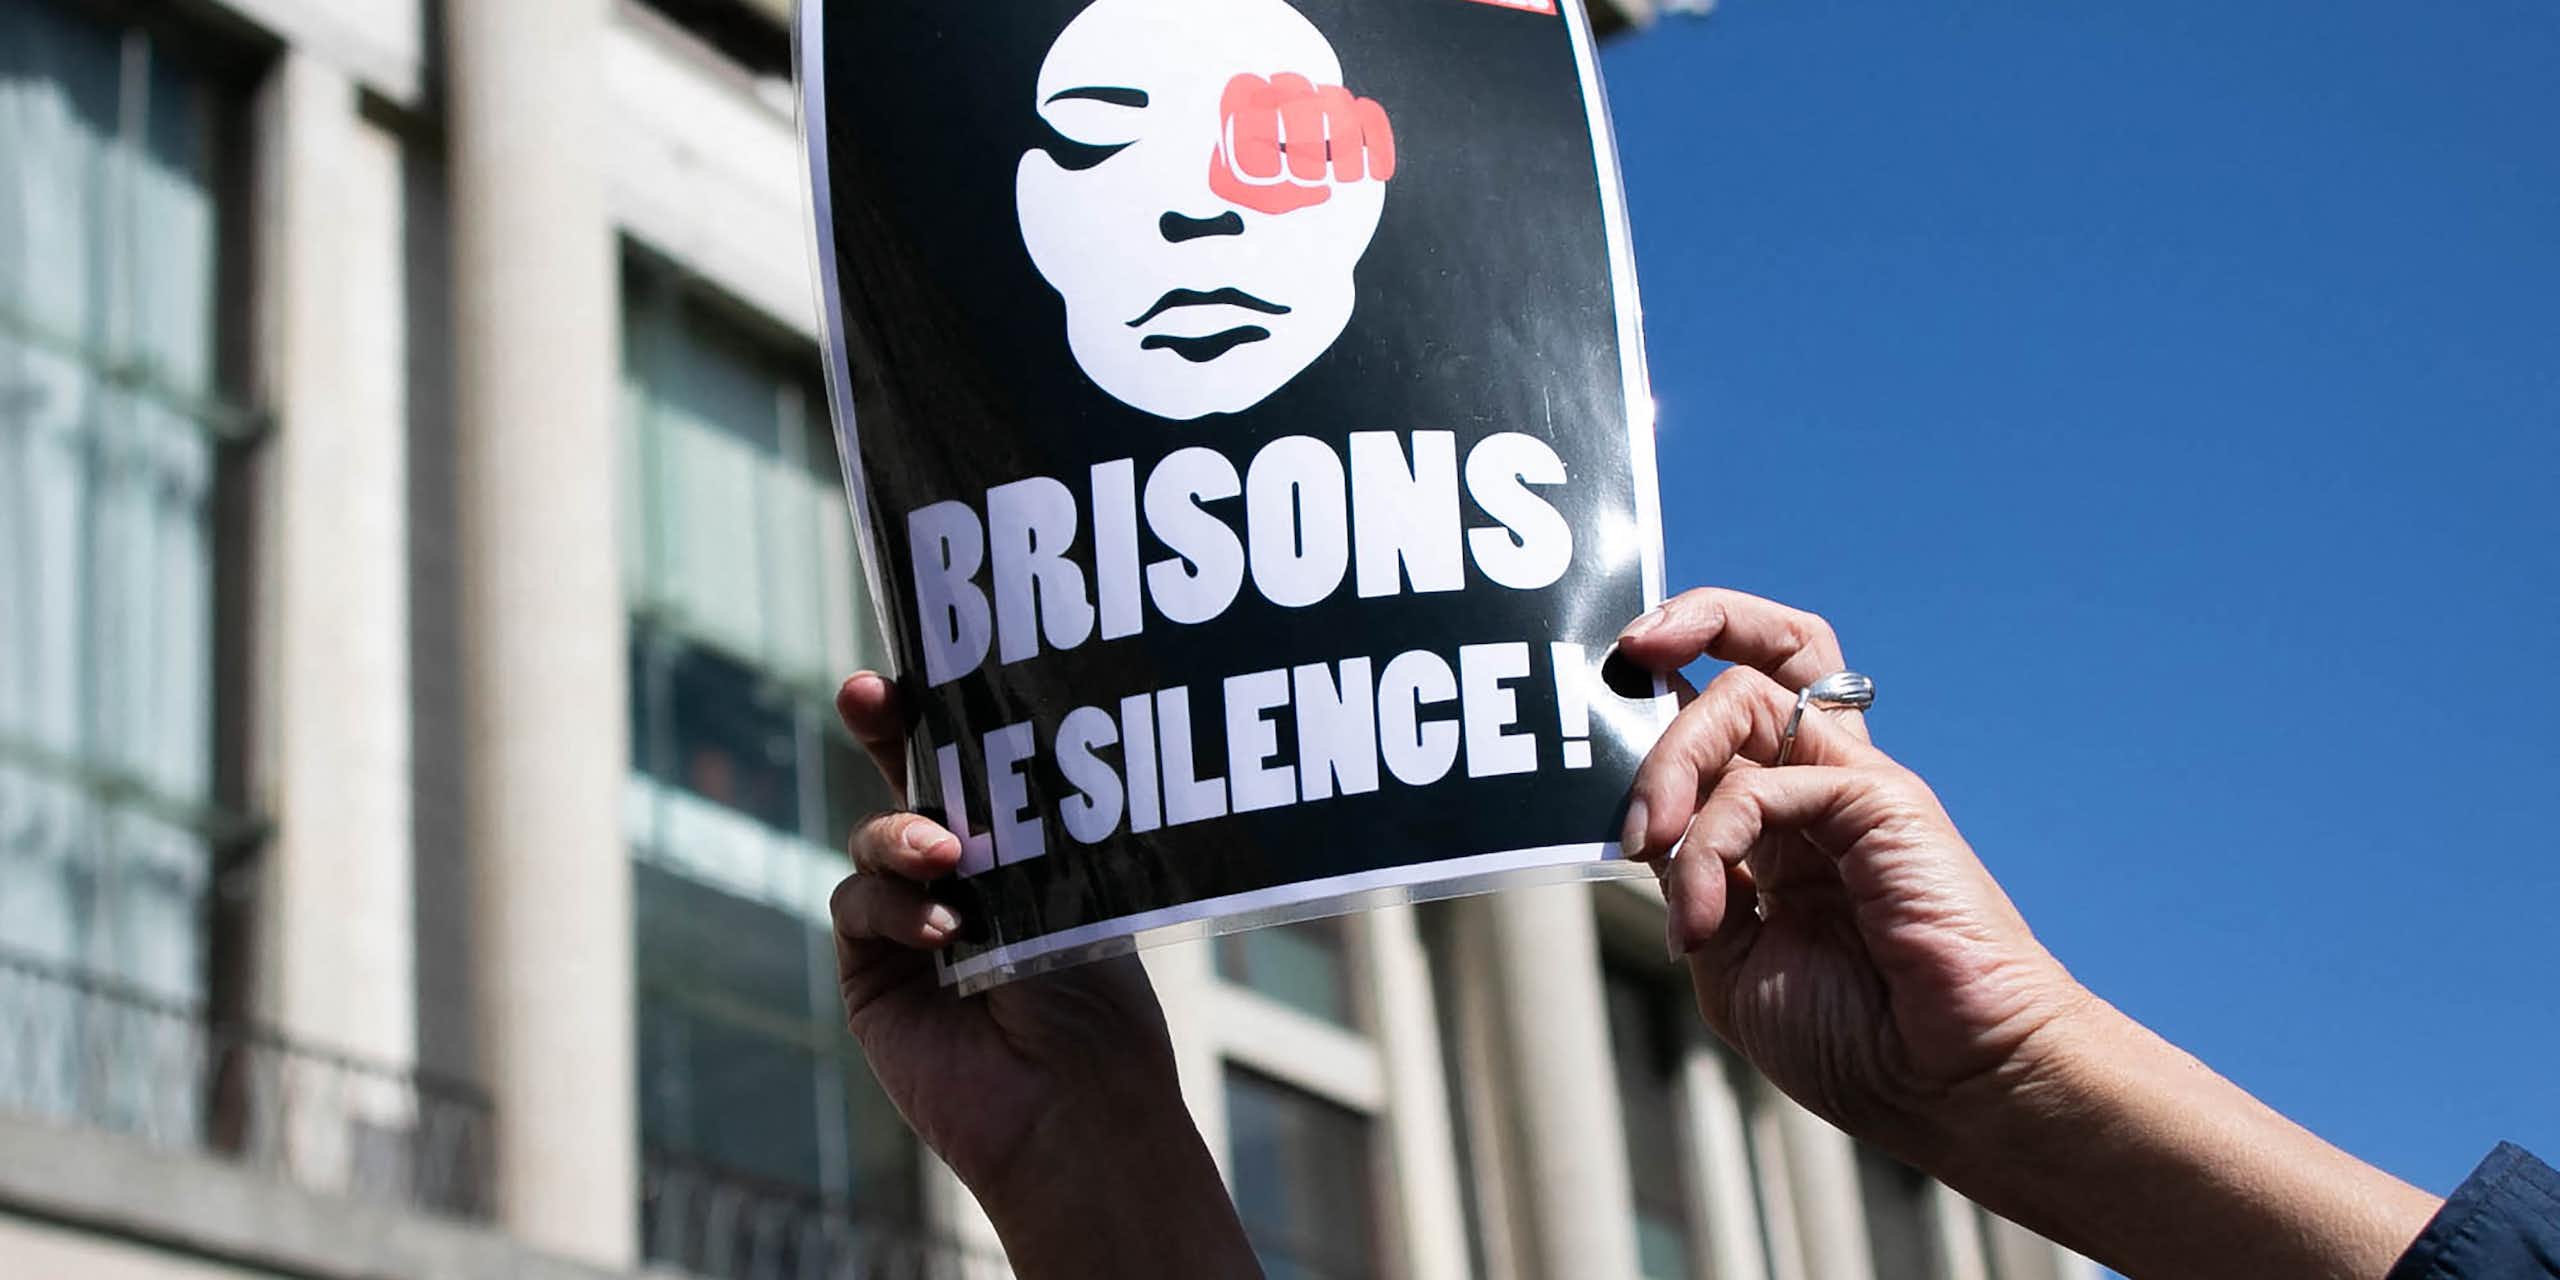 Une personne tient une pancarte sur laquelle on peut lire "Briser le silence" lors d'un rassemblement pour dénoncer les féminicides et les violences domestiques au Havre, dans le nord-ouest de la France, le 18 septembre 2019.